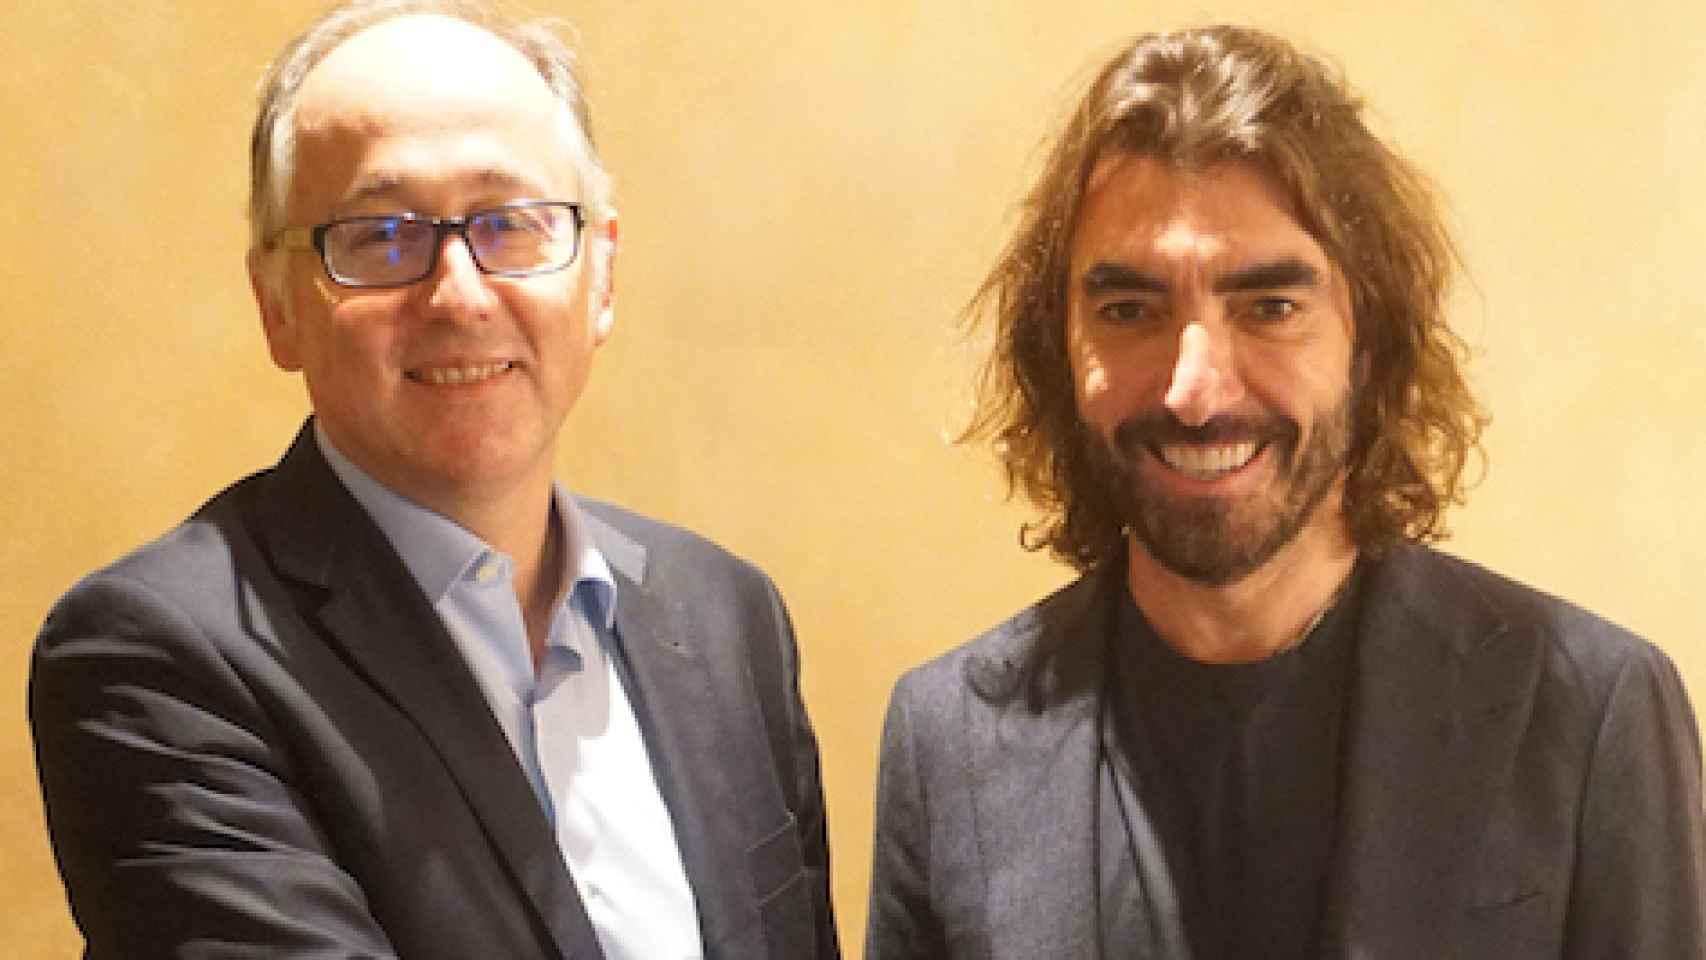 El presidente de Iberia, Luis Gallego, y el consejero delegado de Globalia, Javier Hidalgo, sellando el acuerdo de compra de Air Europa por parte de Iberia.